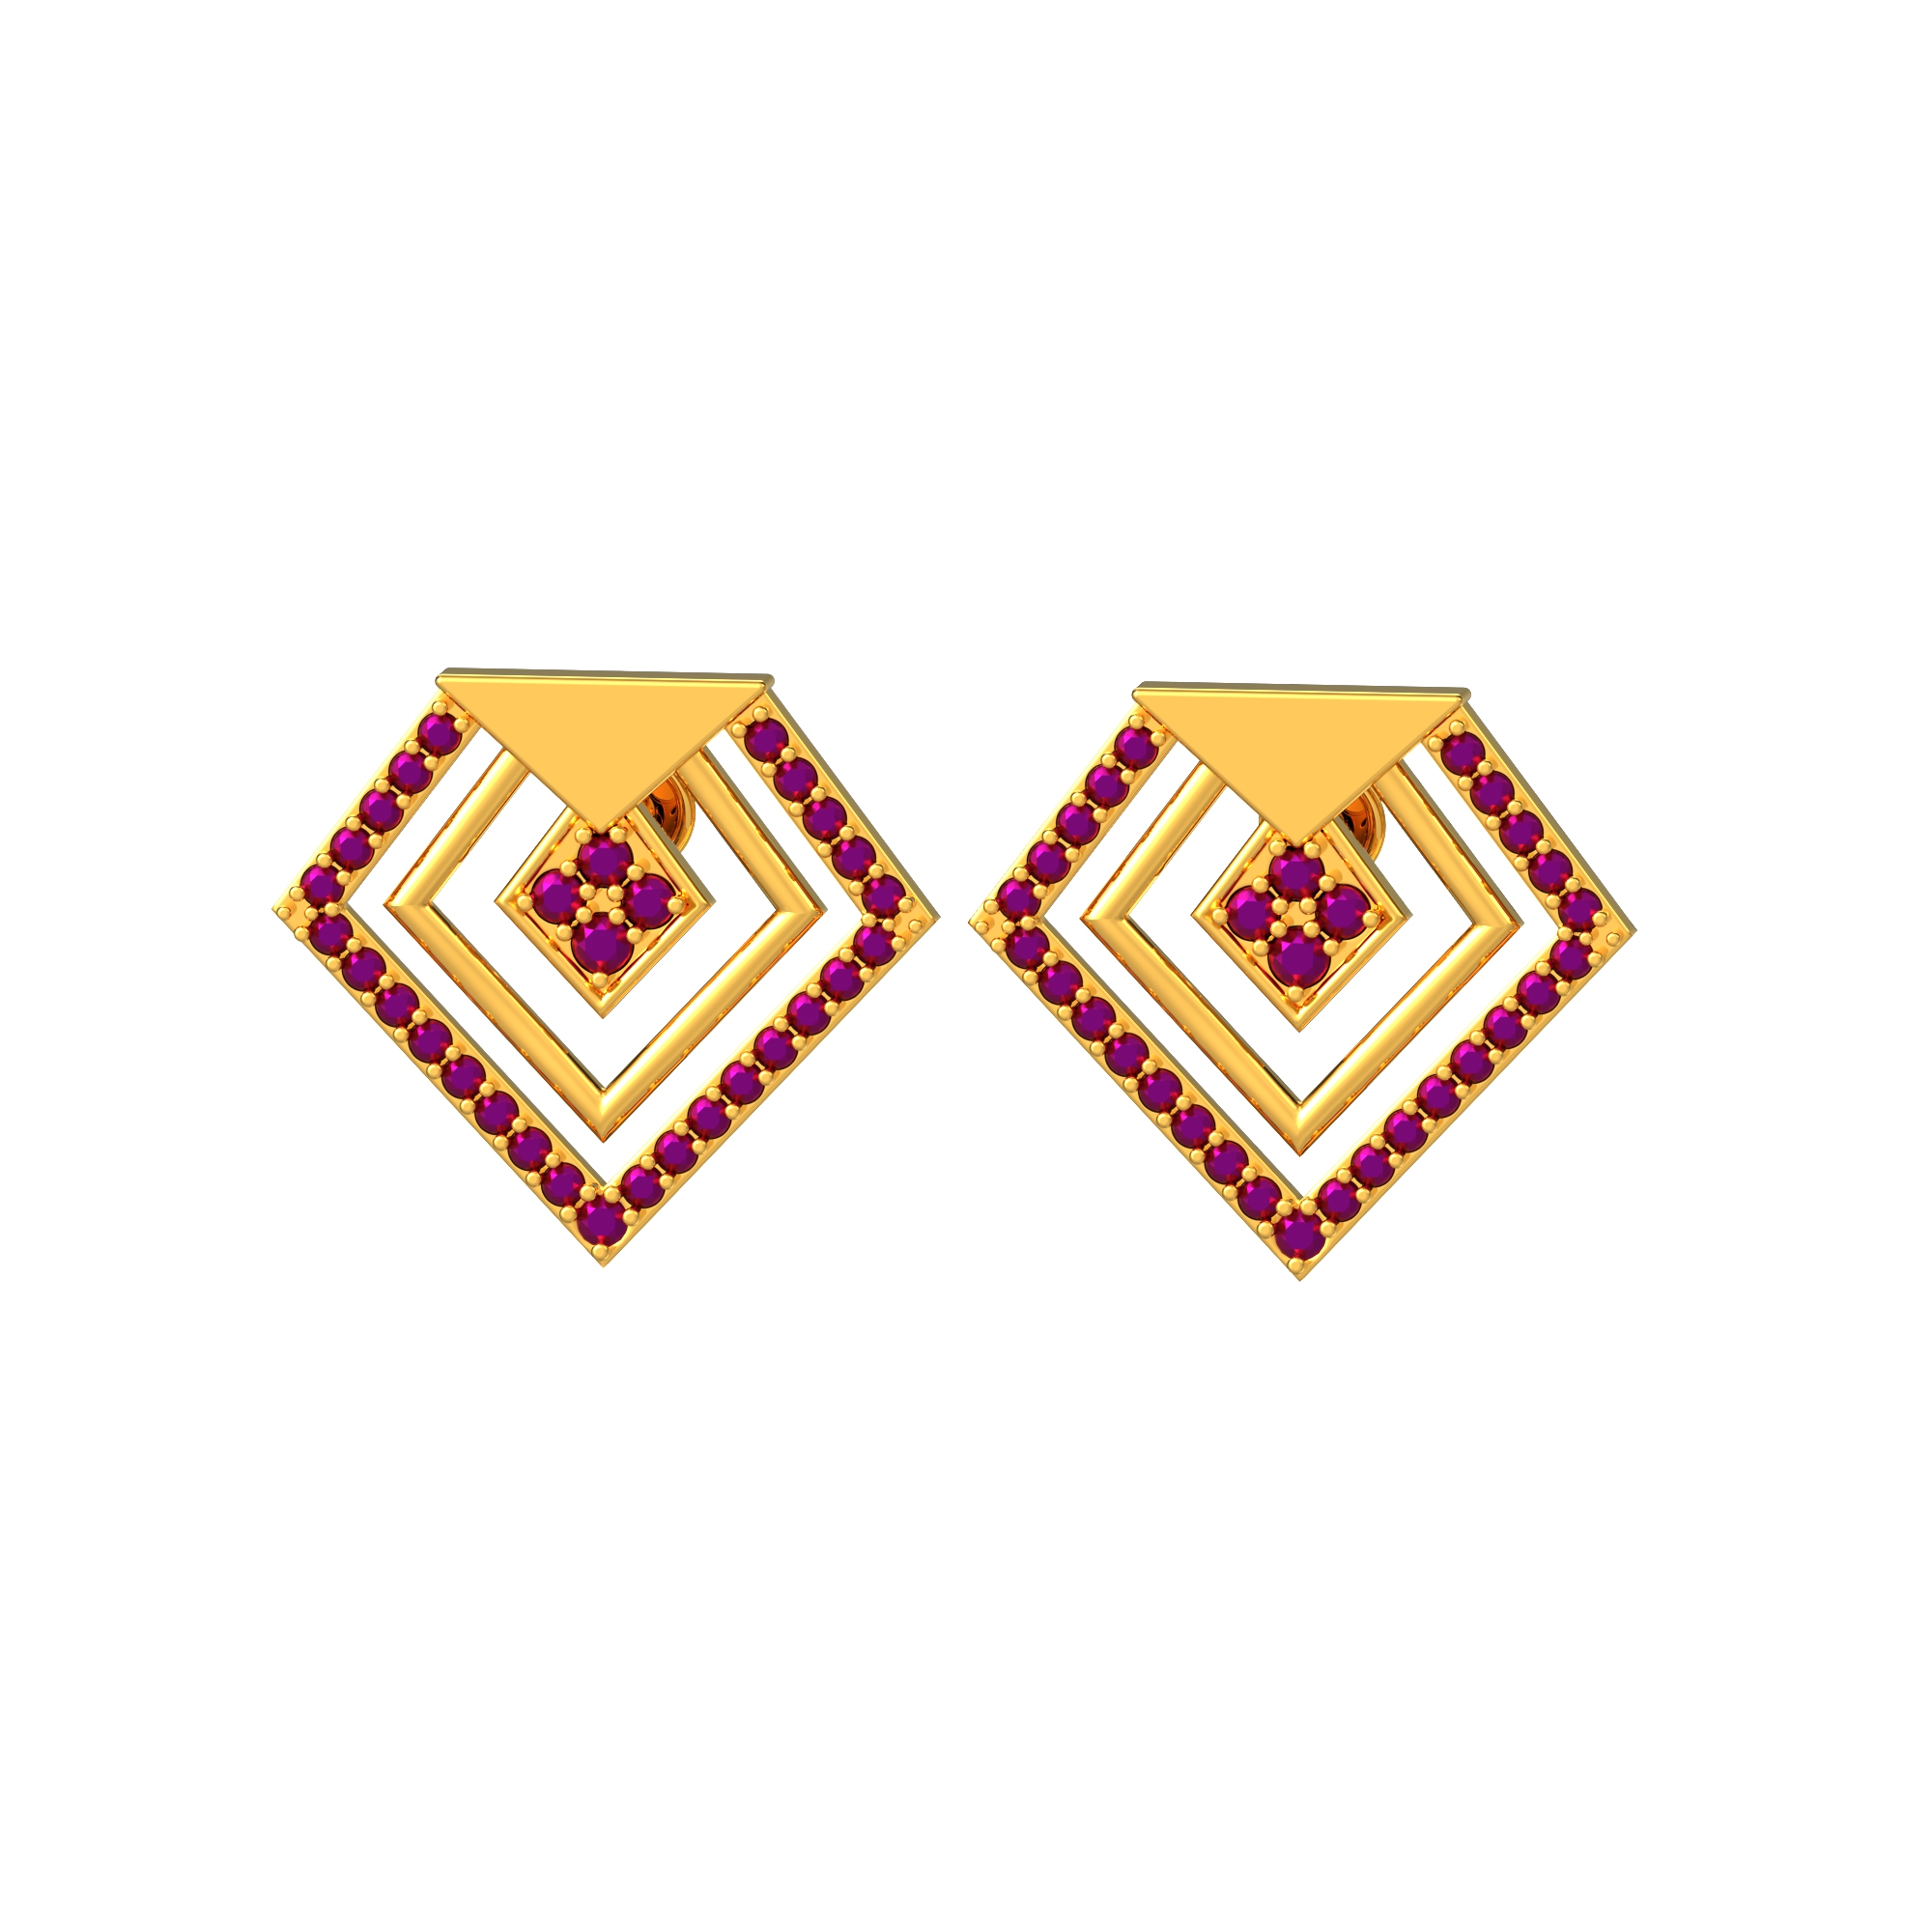 Stone Studded Gold Earrings Online